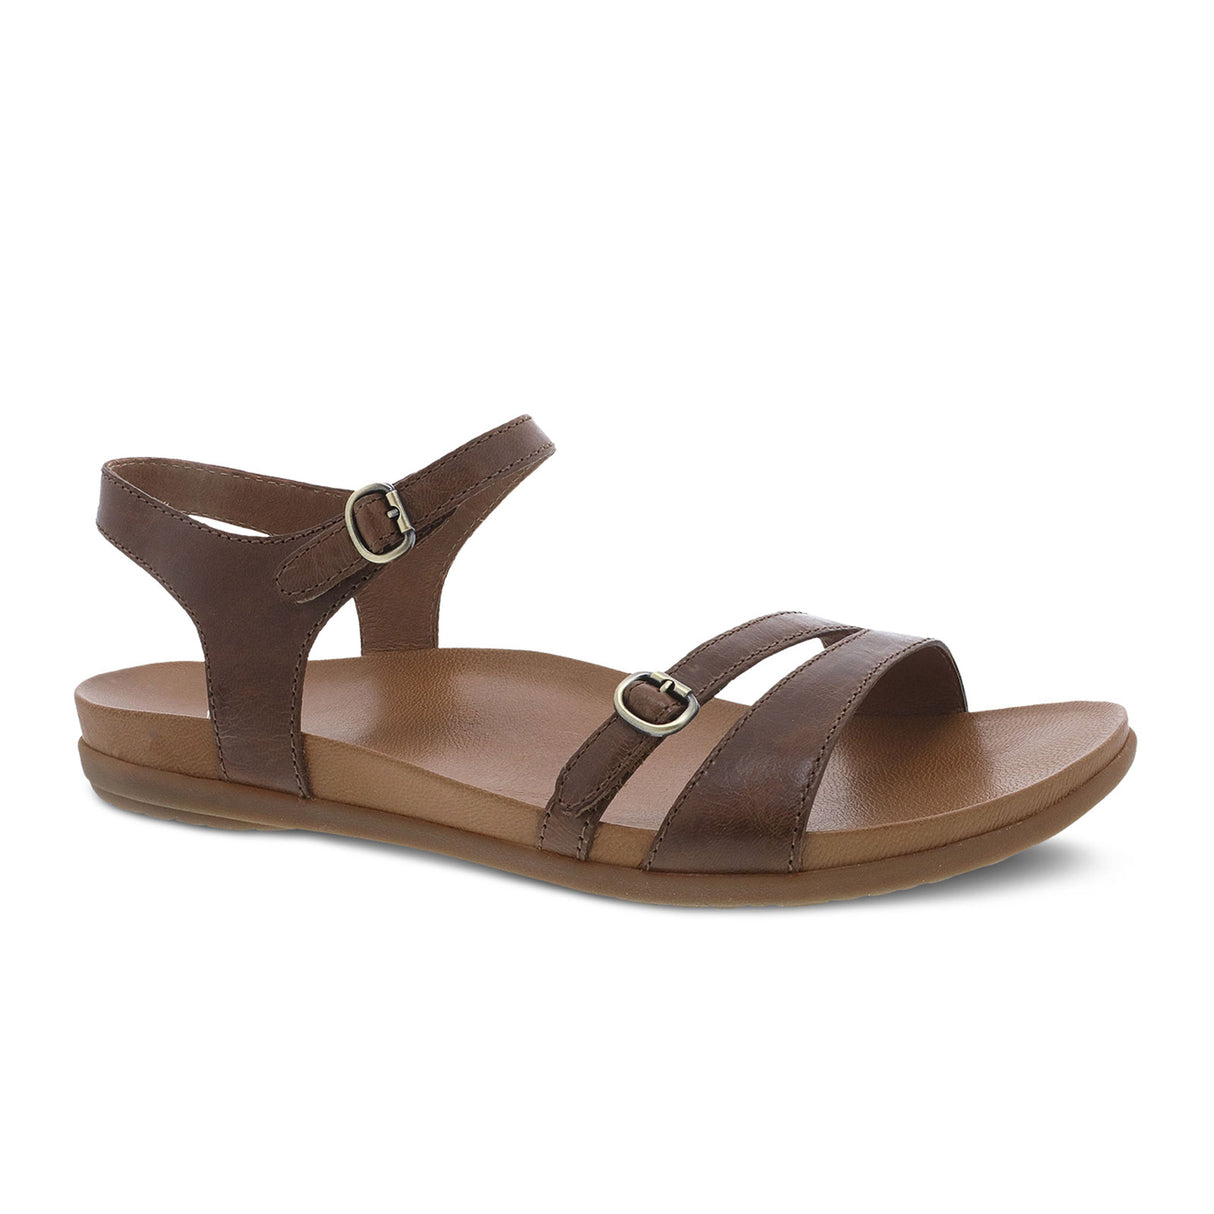 Dansko Janelle Sandal (Women) - Tan Glazed Kid Leather Sandals - Backstrap Sandals - The Heel Shoe Fitters